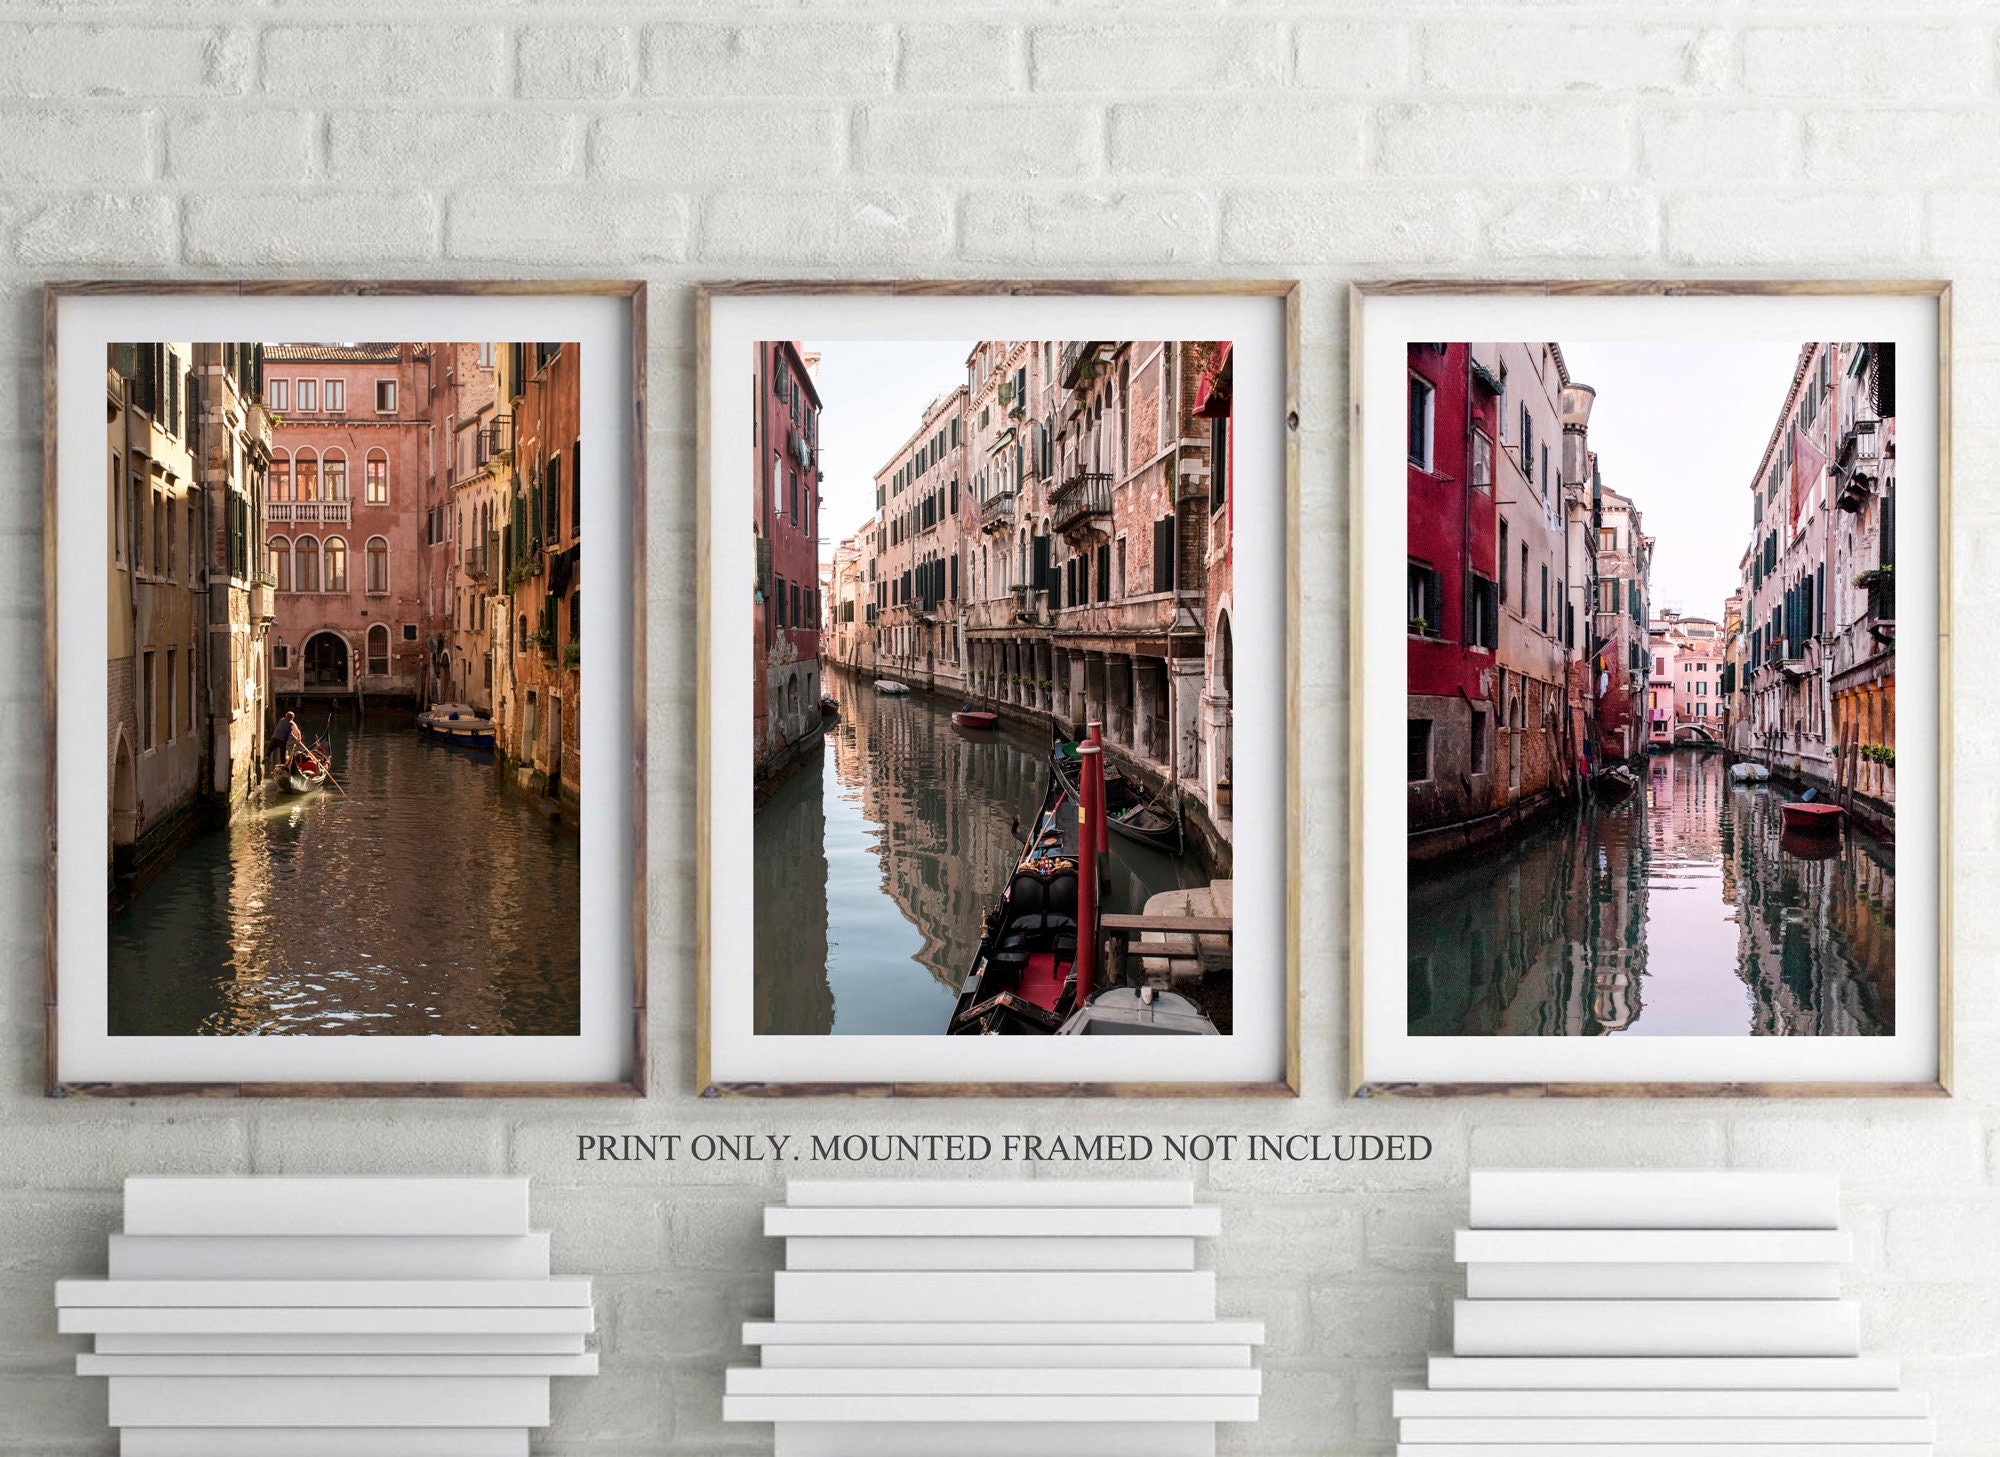 Venice Canal Gondola Italy Prints Set Italy Printable Venice Wall Art Set of 3 Prints Europe Photo Art Italian City Wall Decor Digital